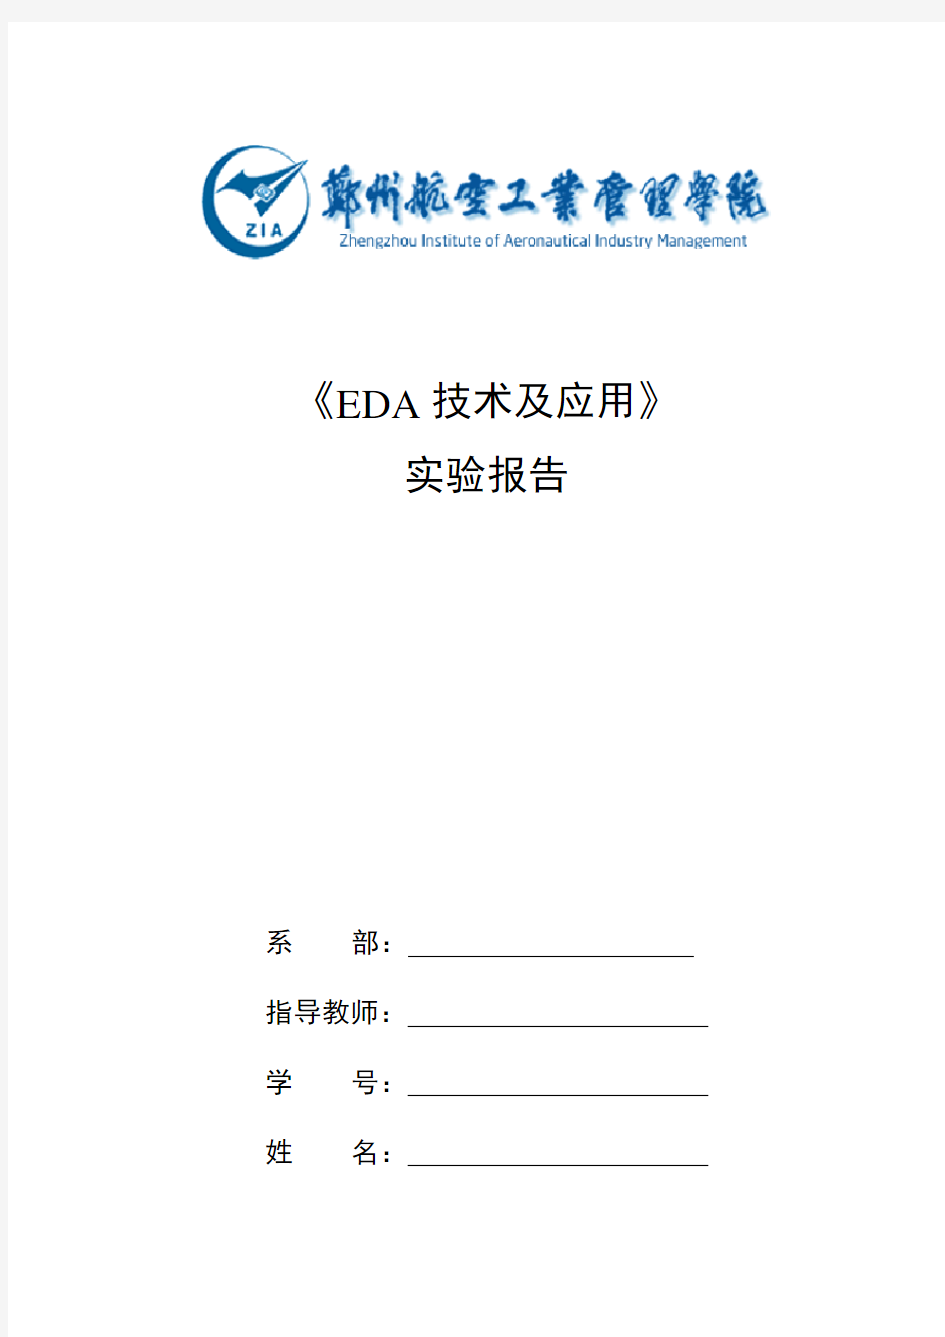 EDA技术及应用实验报告(完整版纯手打)